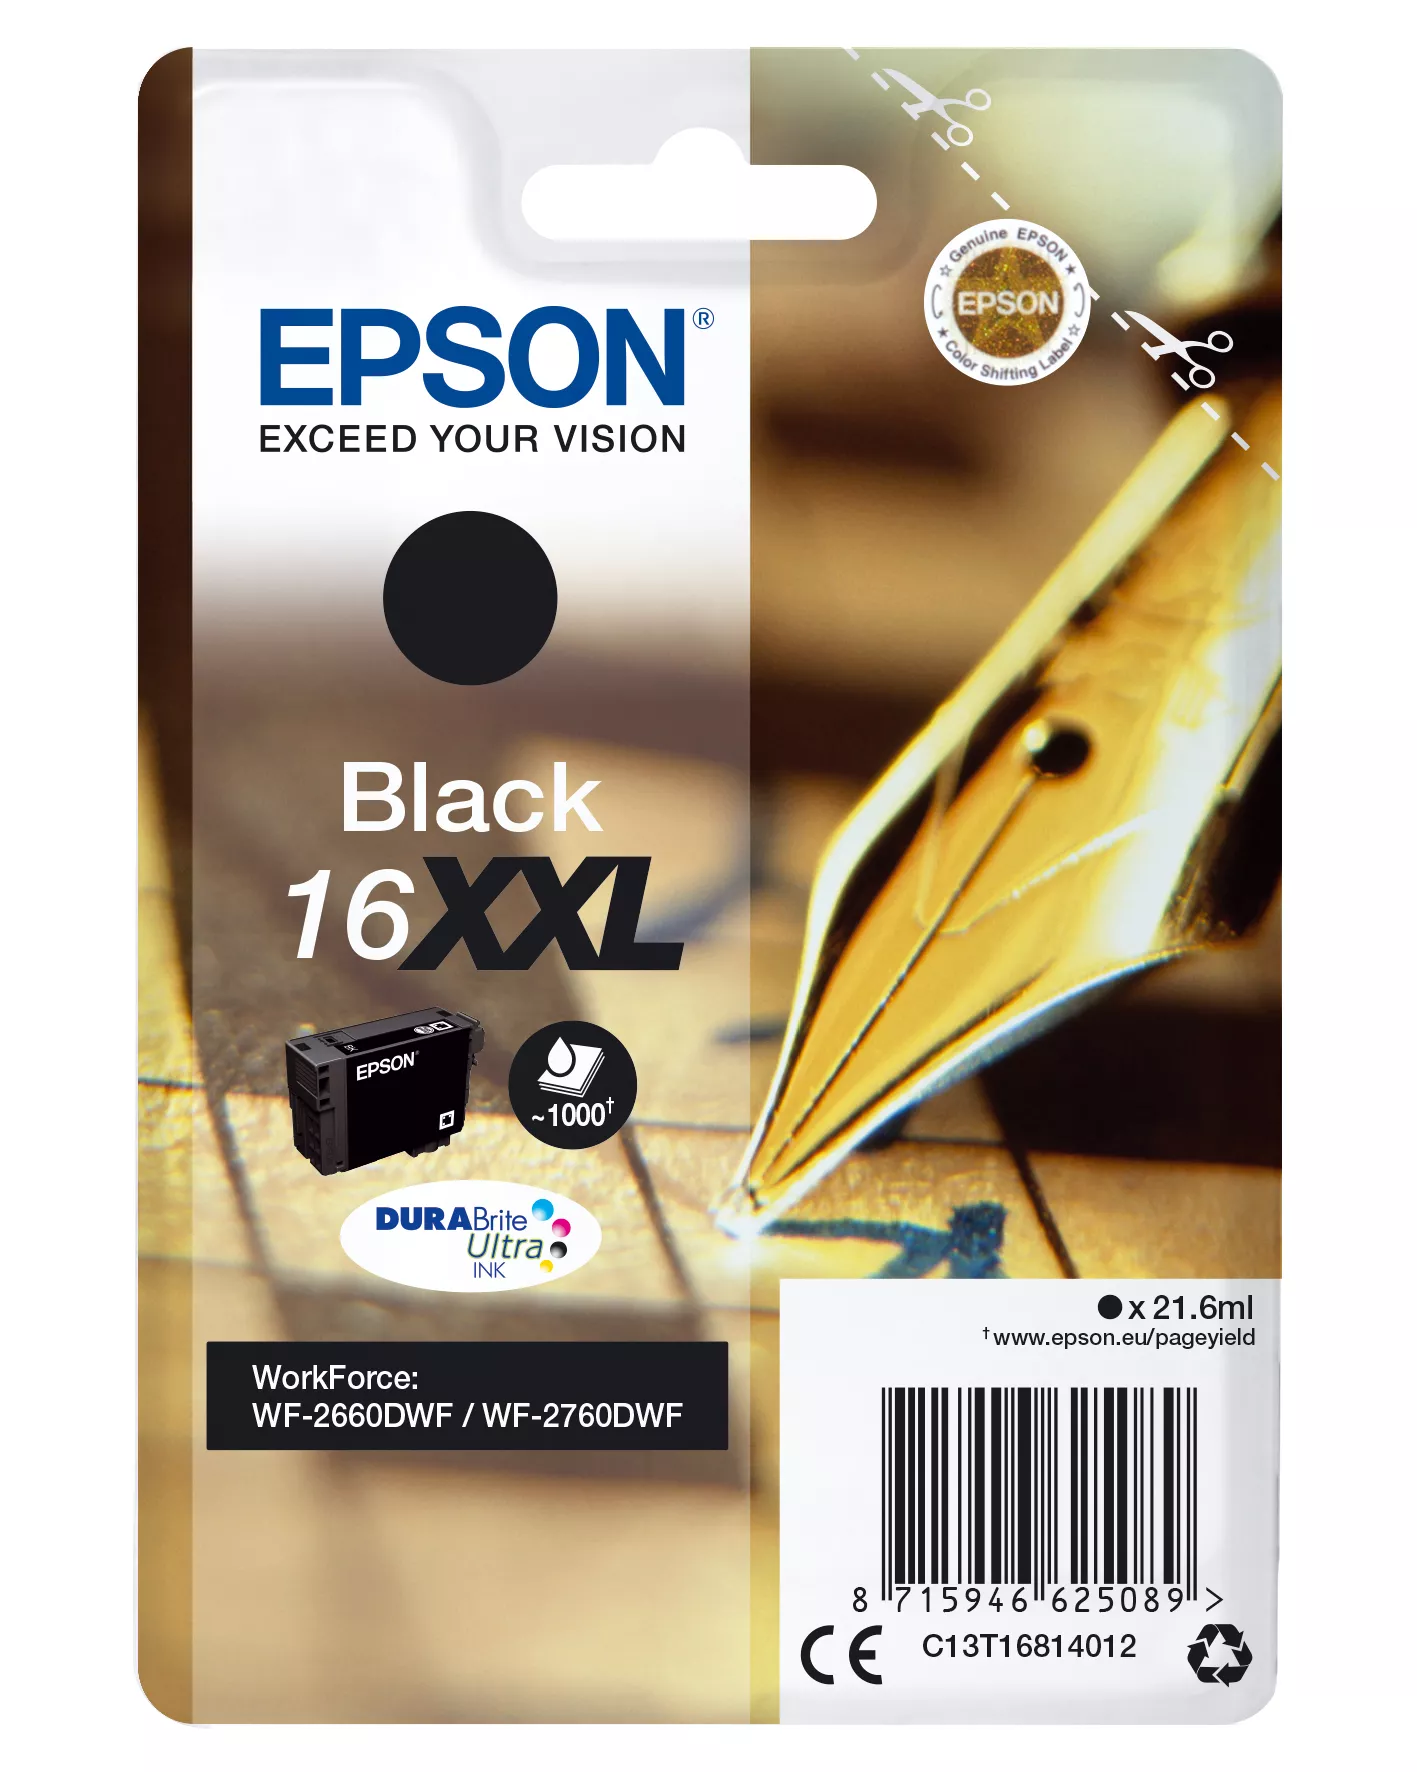 Achat EPSON 16XXL cartouche dencre noir très haute capacité 1 sur hello RSE